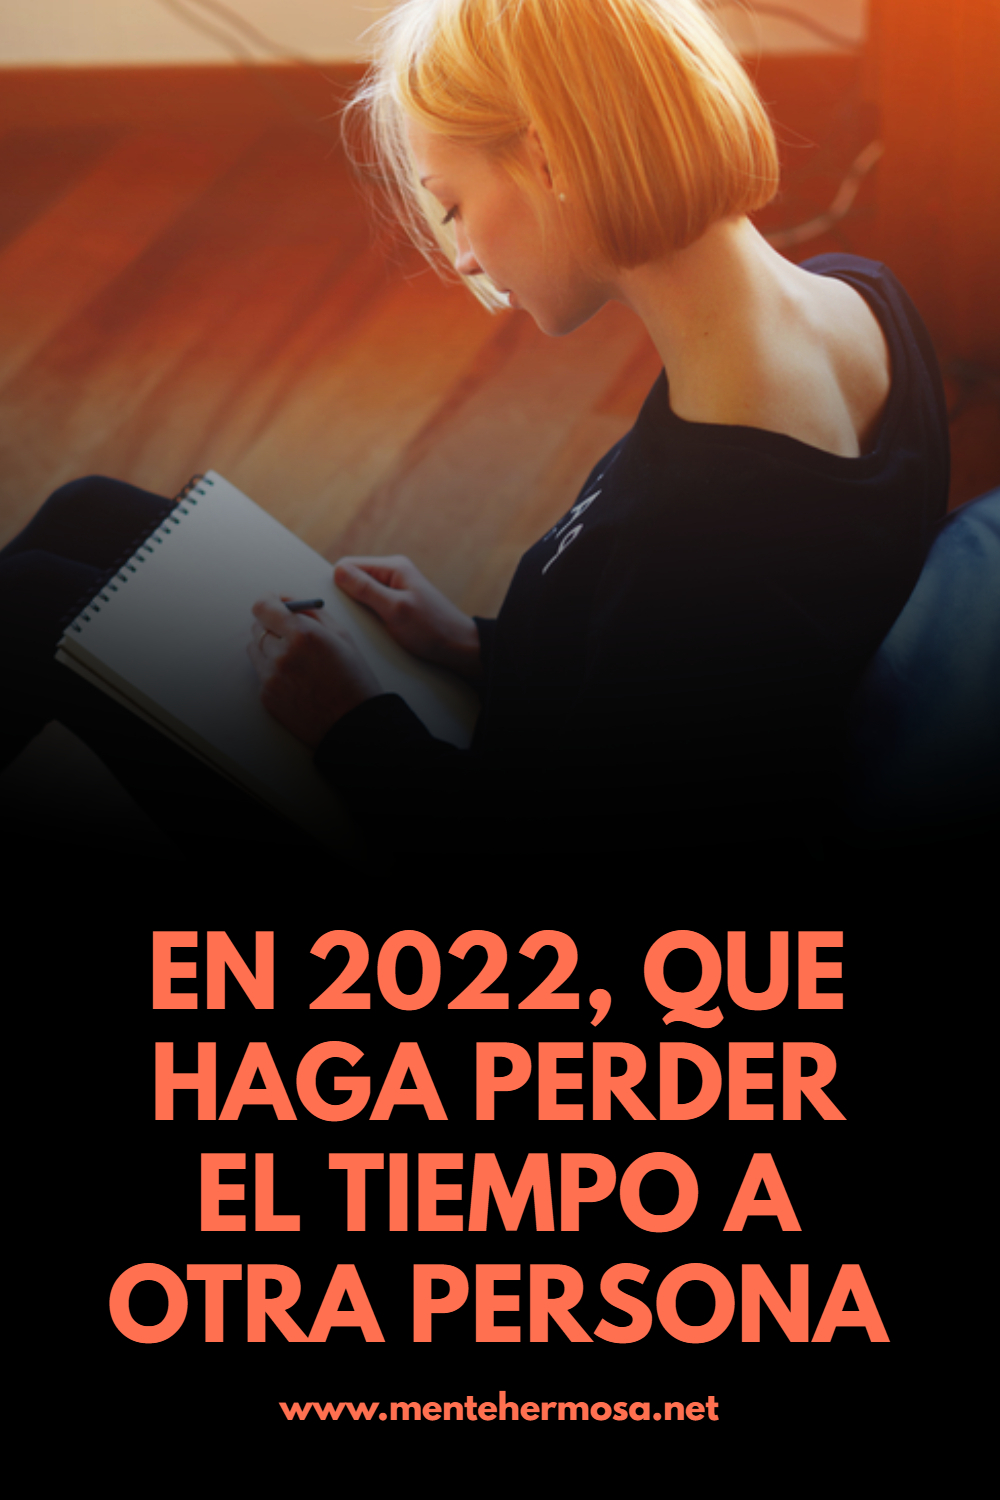 EN 2022, QUE HAGA PERDER EL TIEMPO A OTRA PERSONA